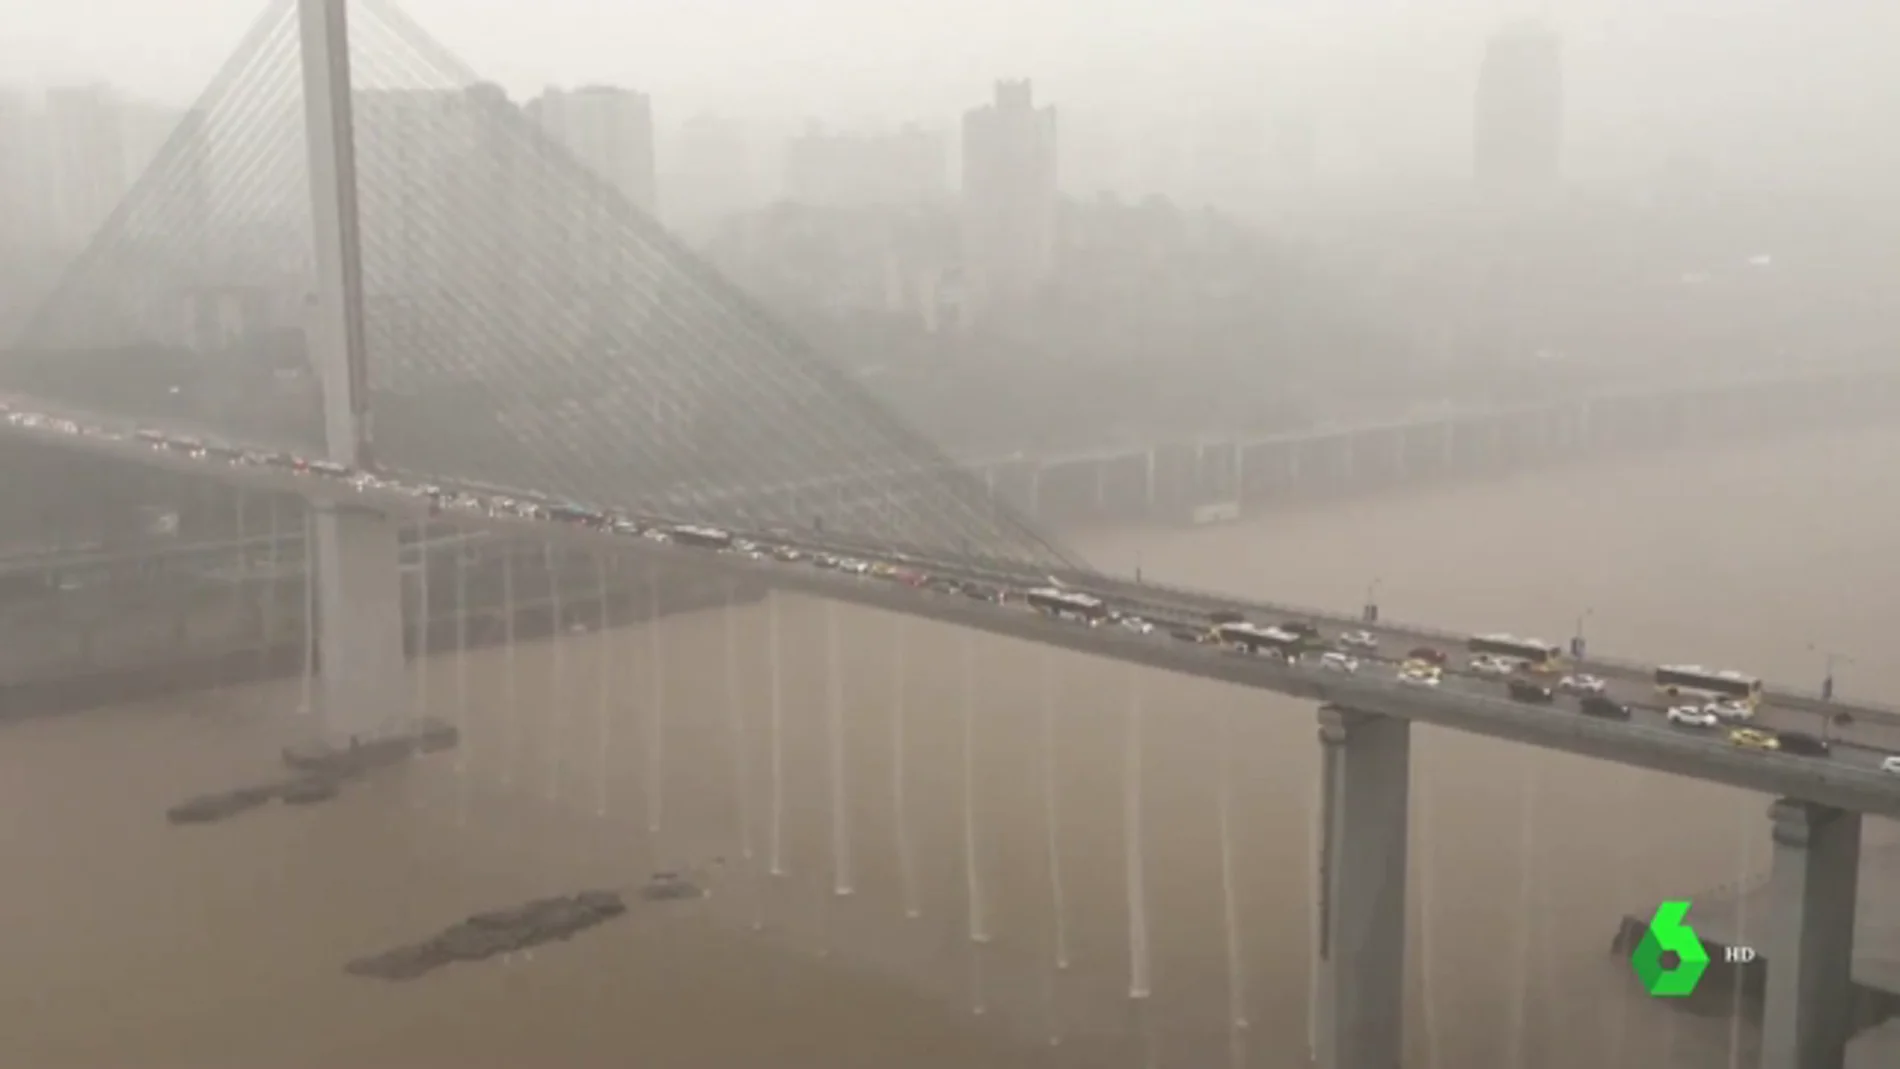 Las lluvias torrenciales provocan cascadas en un puente en China